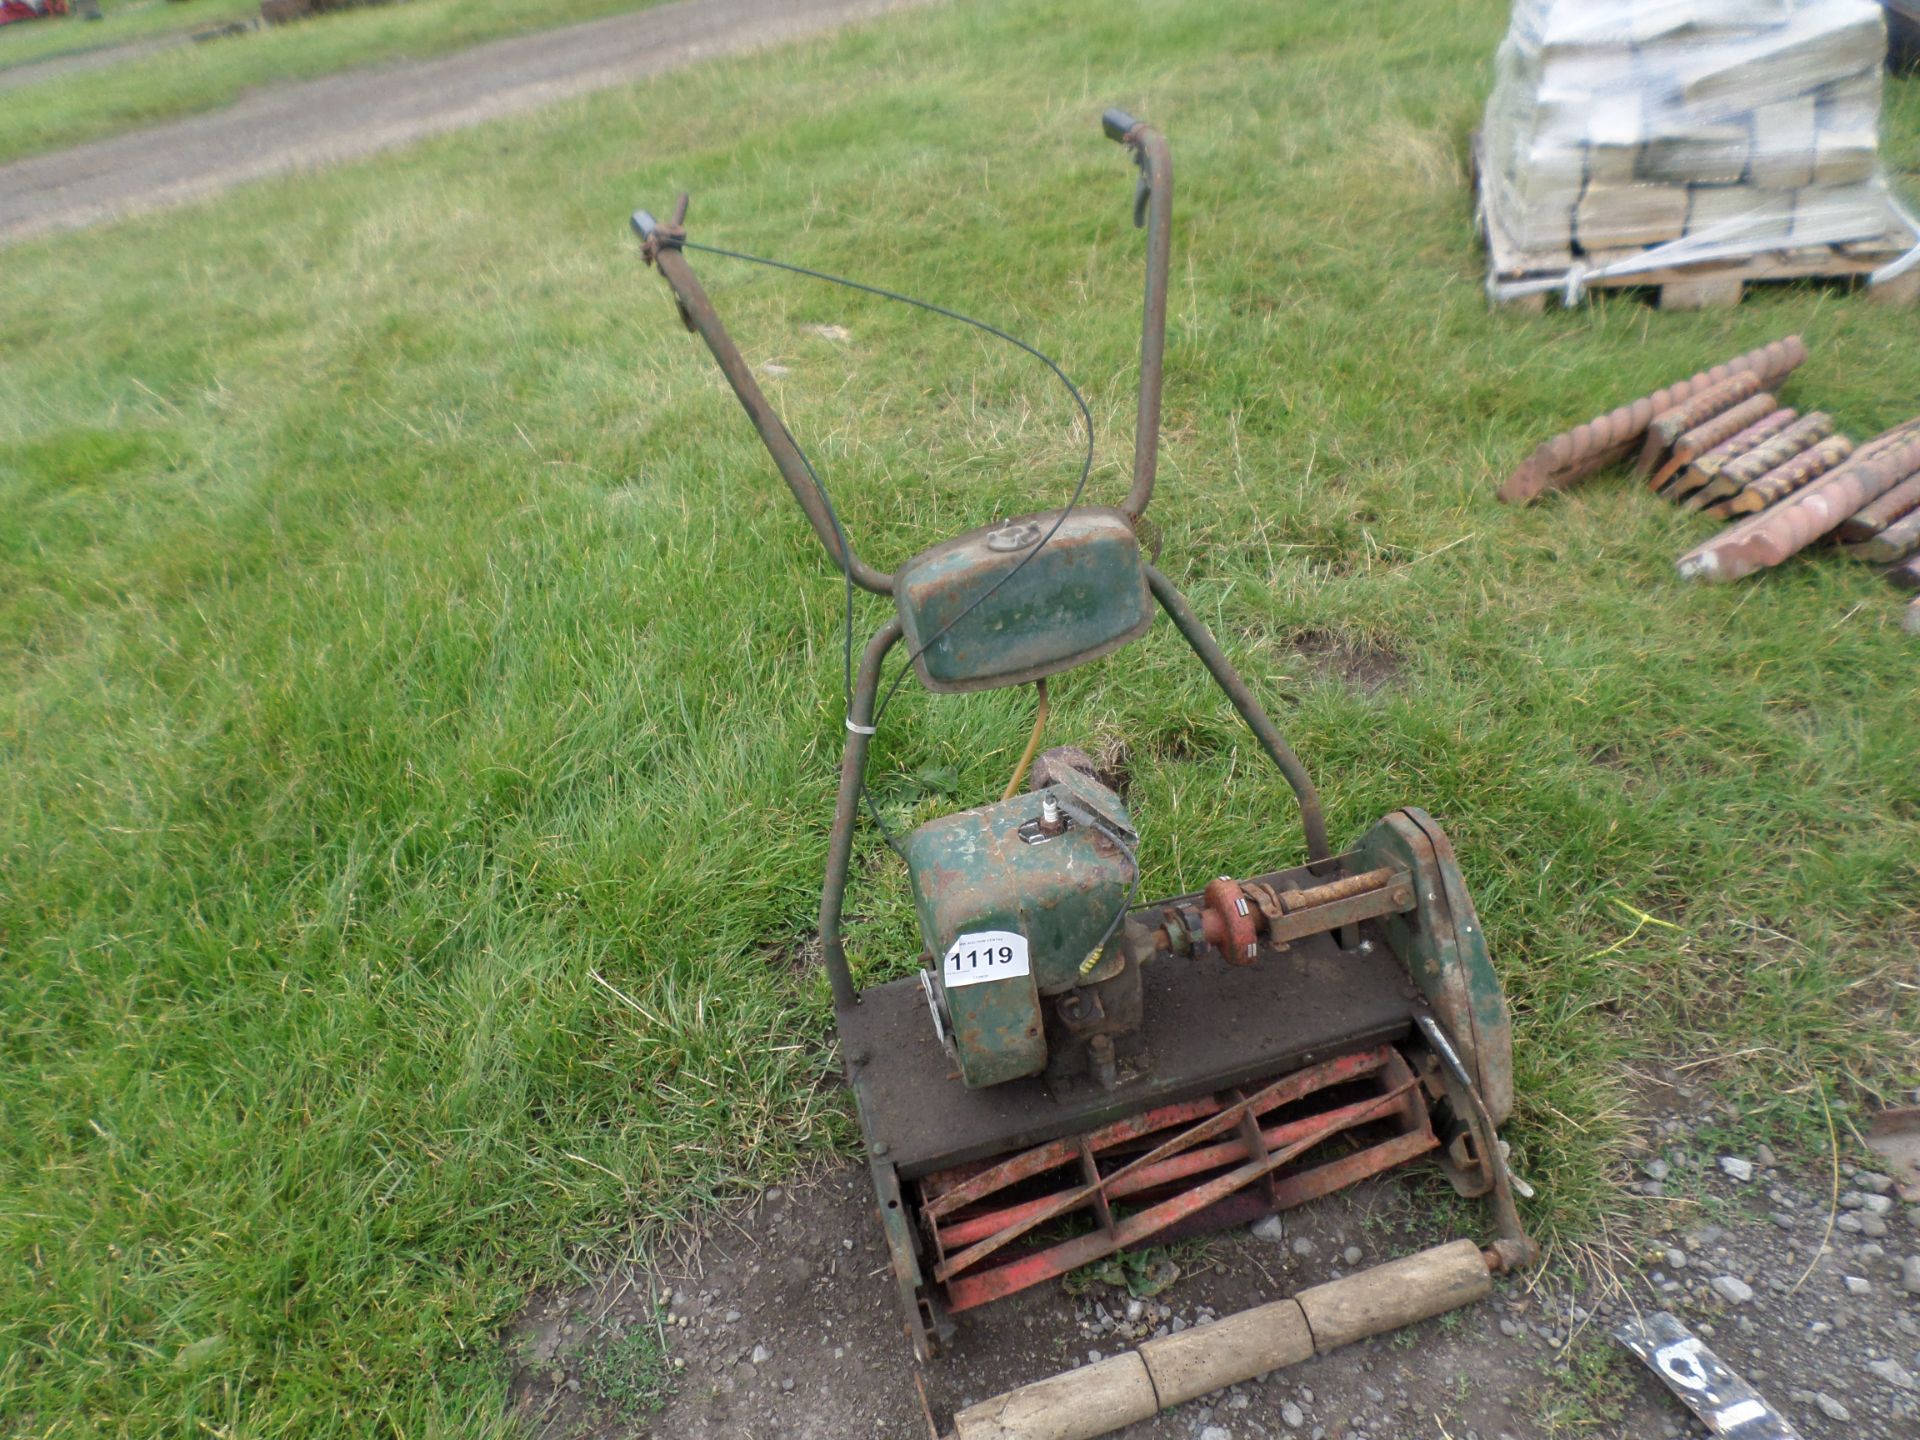 Old lawnmower NO VAT